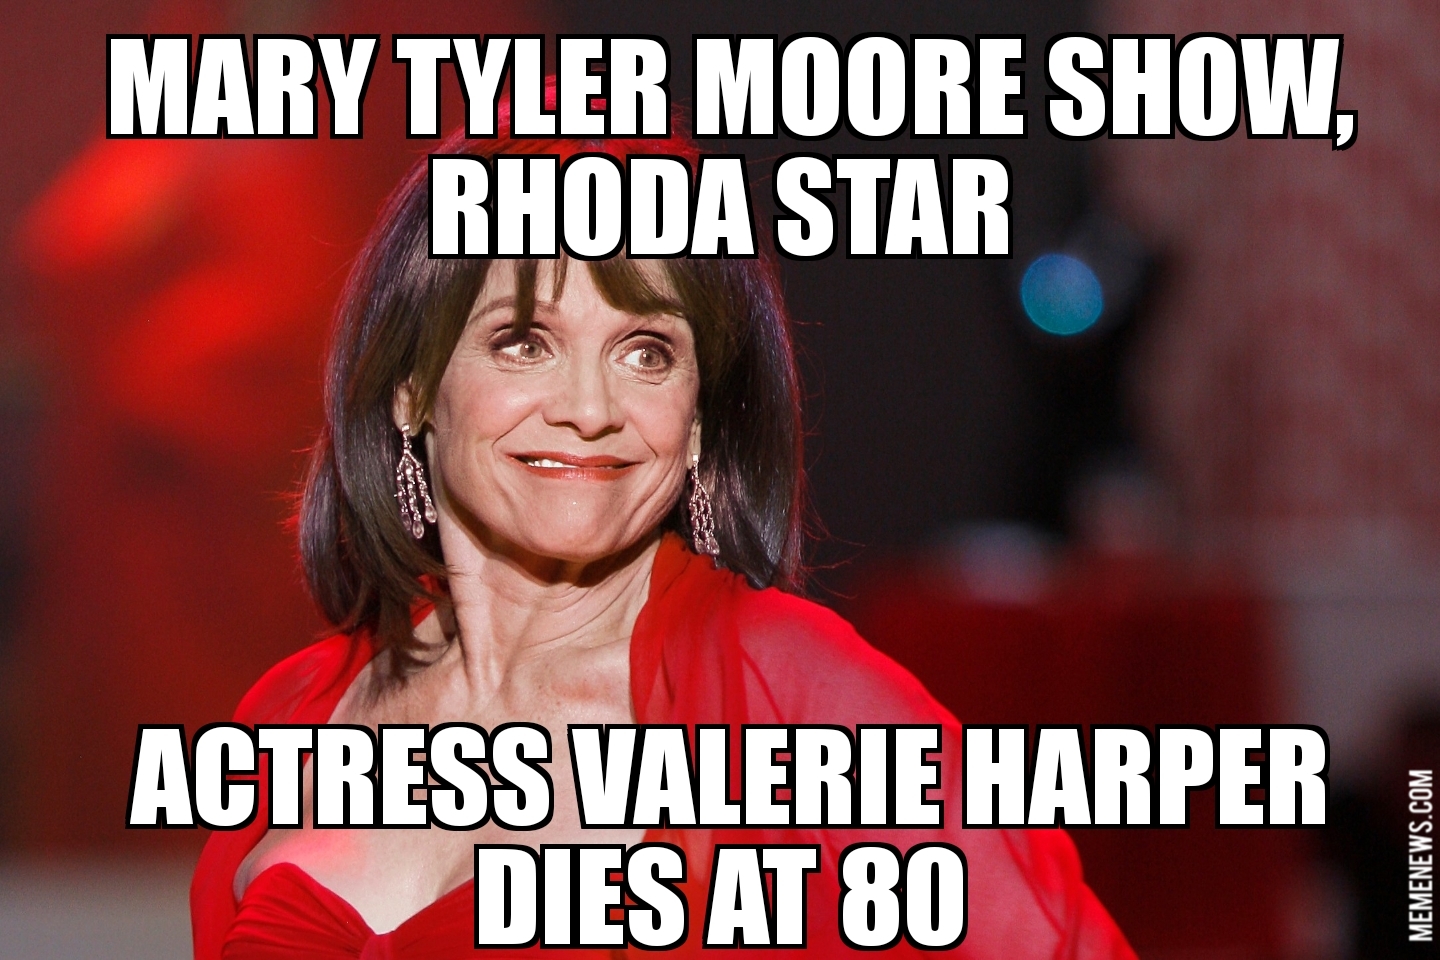 Valerie Harper dies